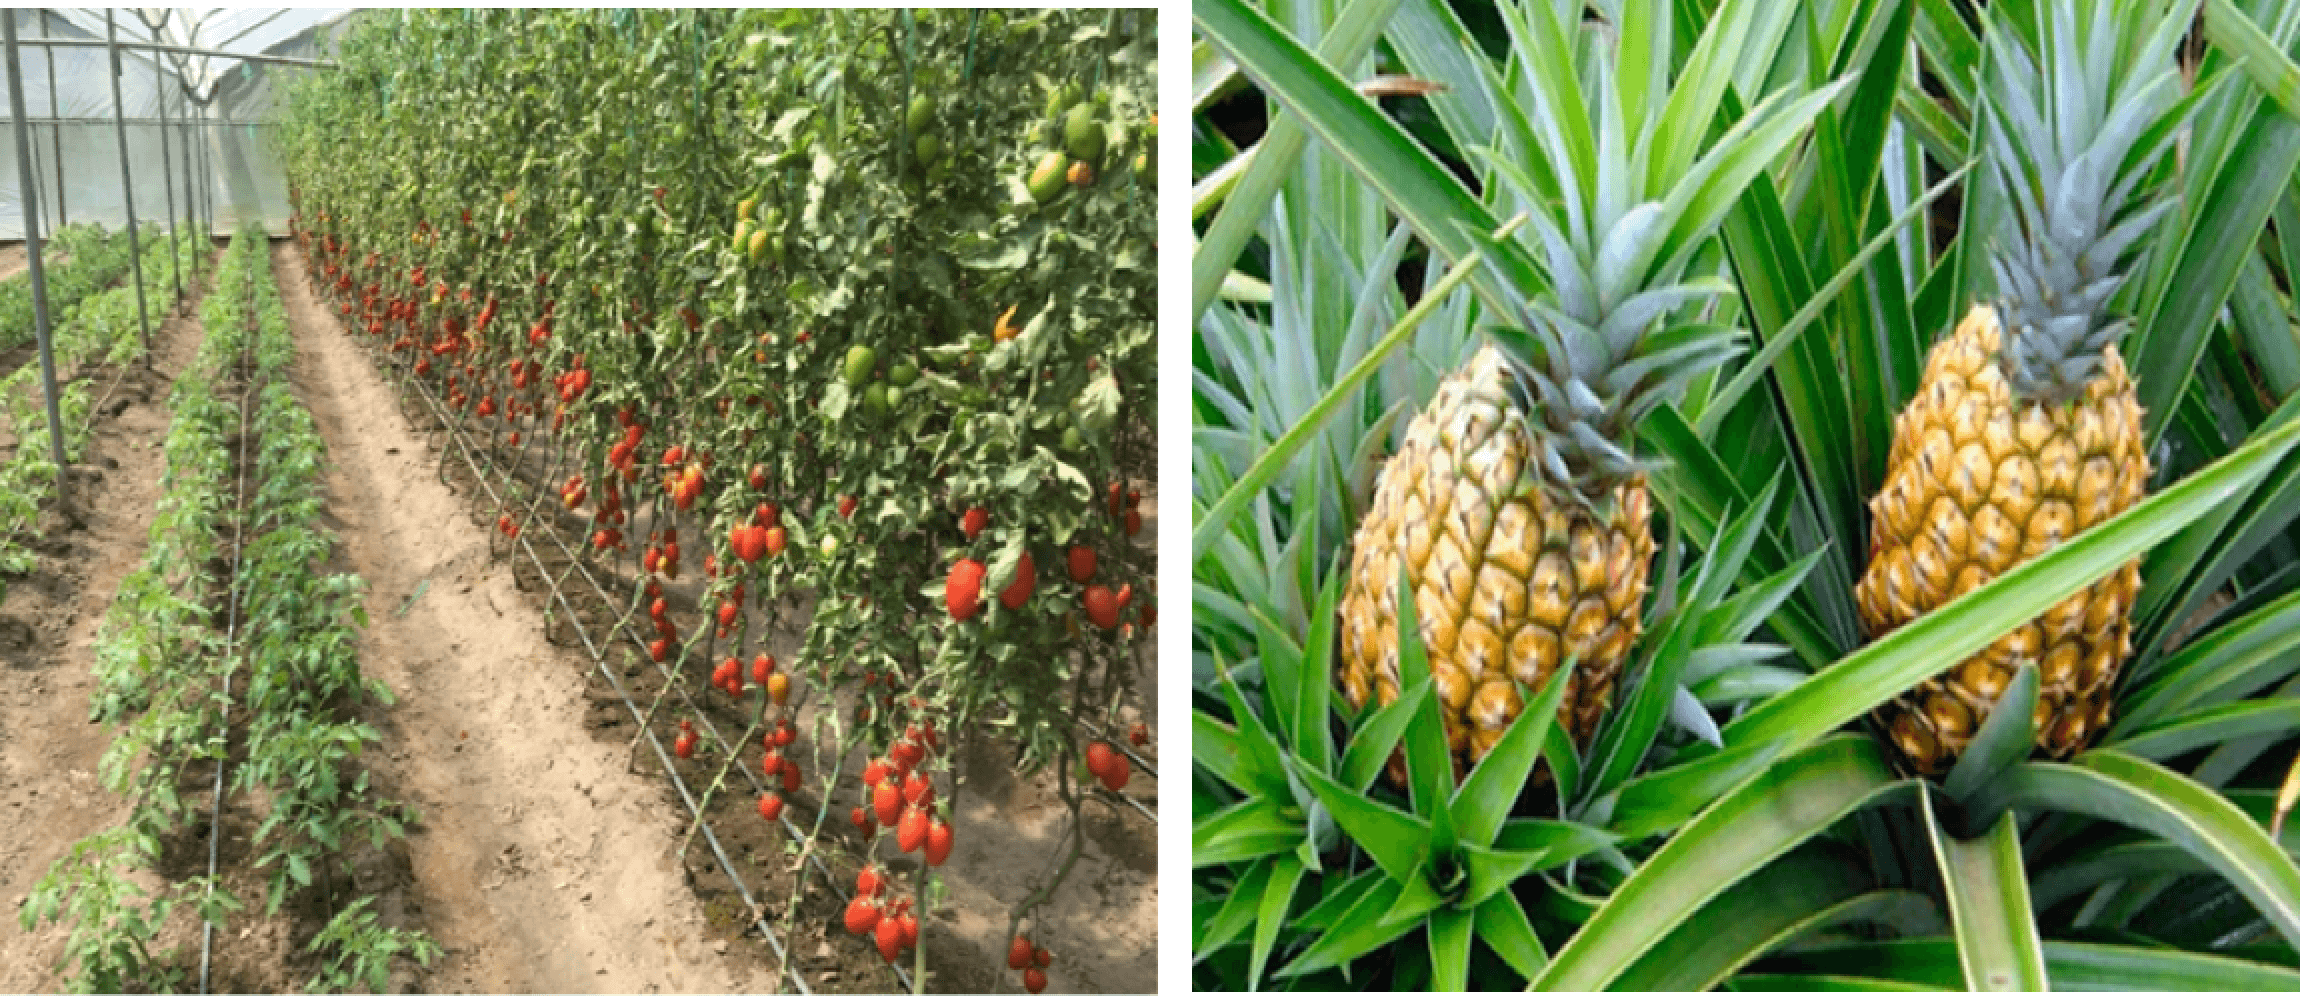 Plantaciones Tomate y Pina